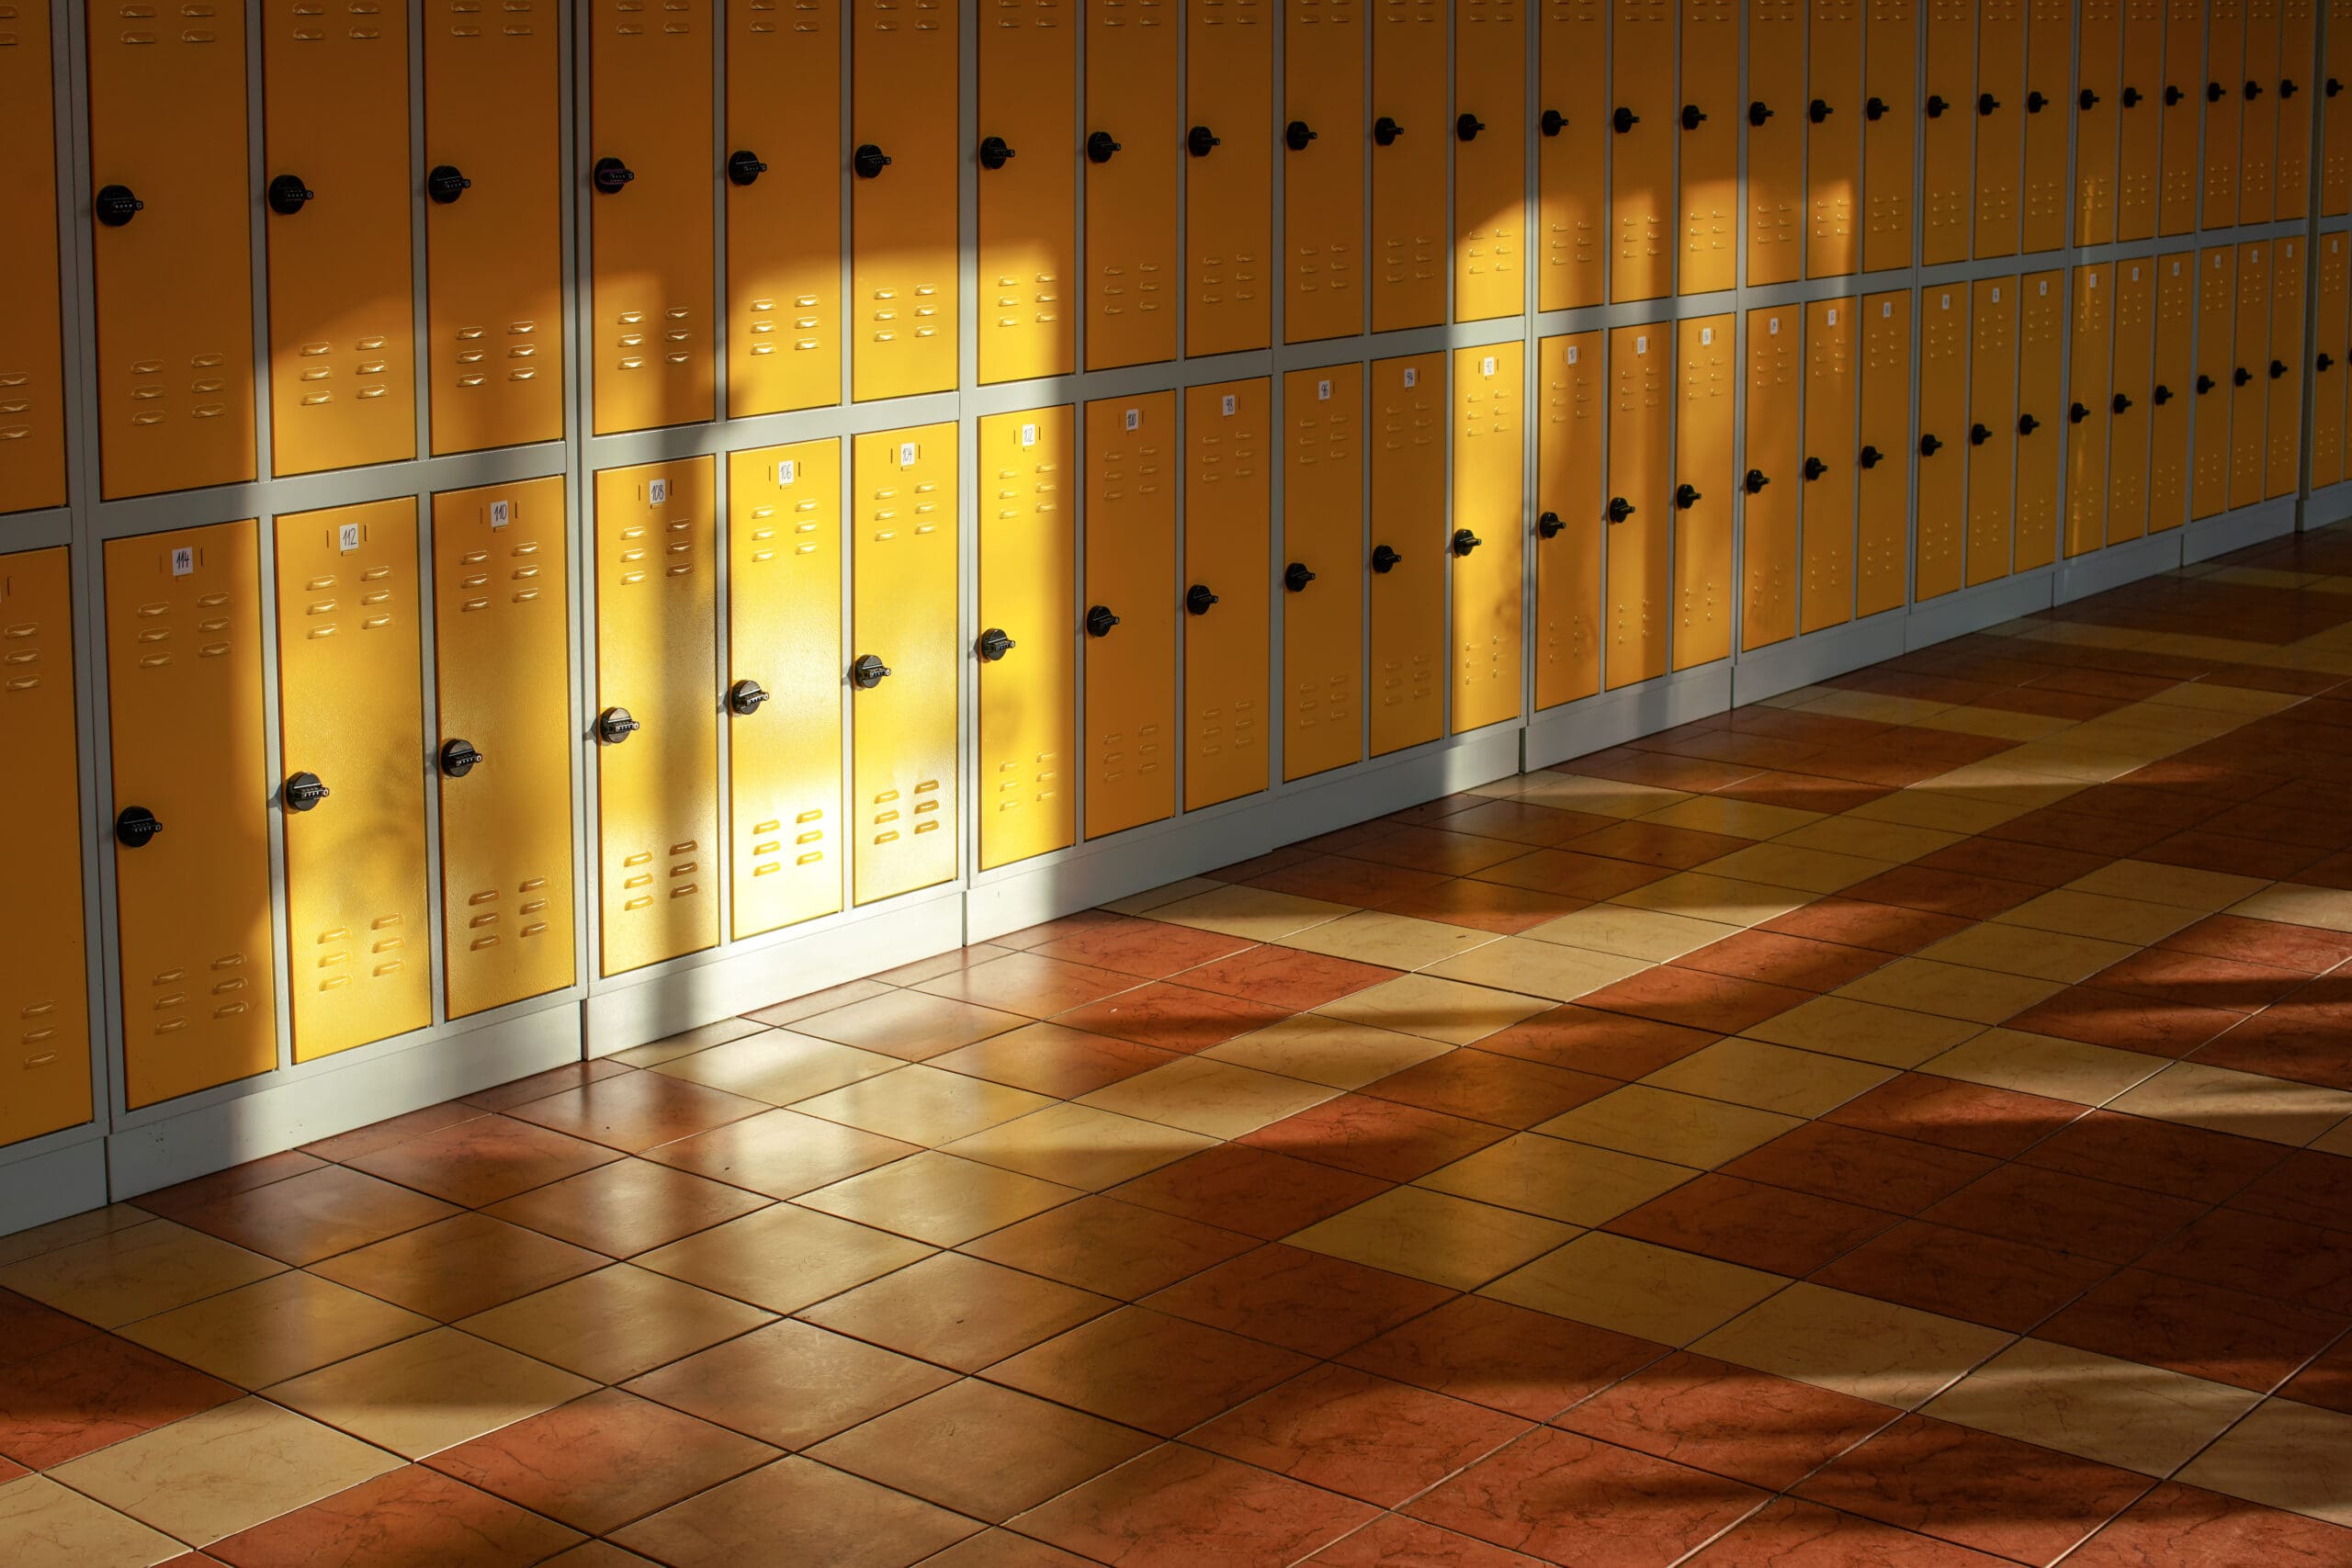 Skåp i skolkorridor där ljuset solljus skiner in.